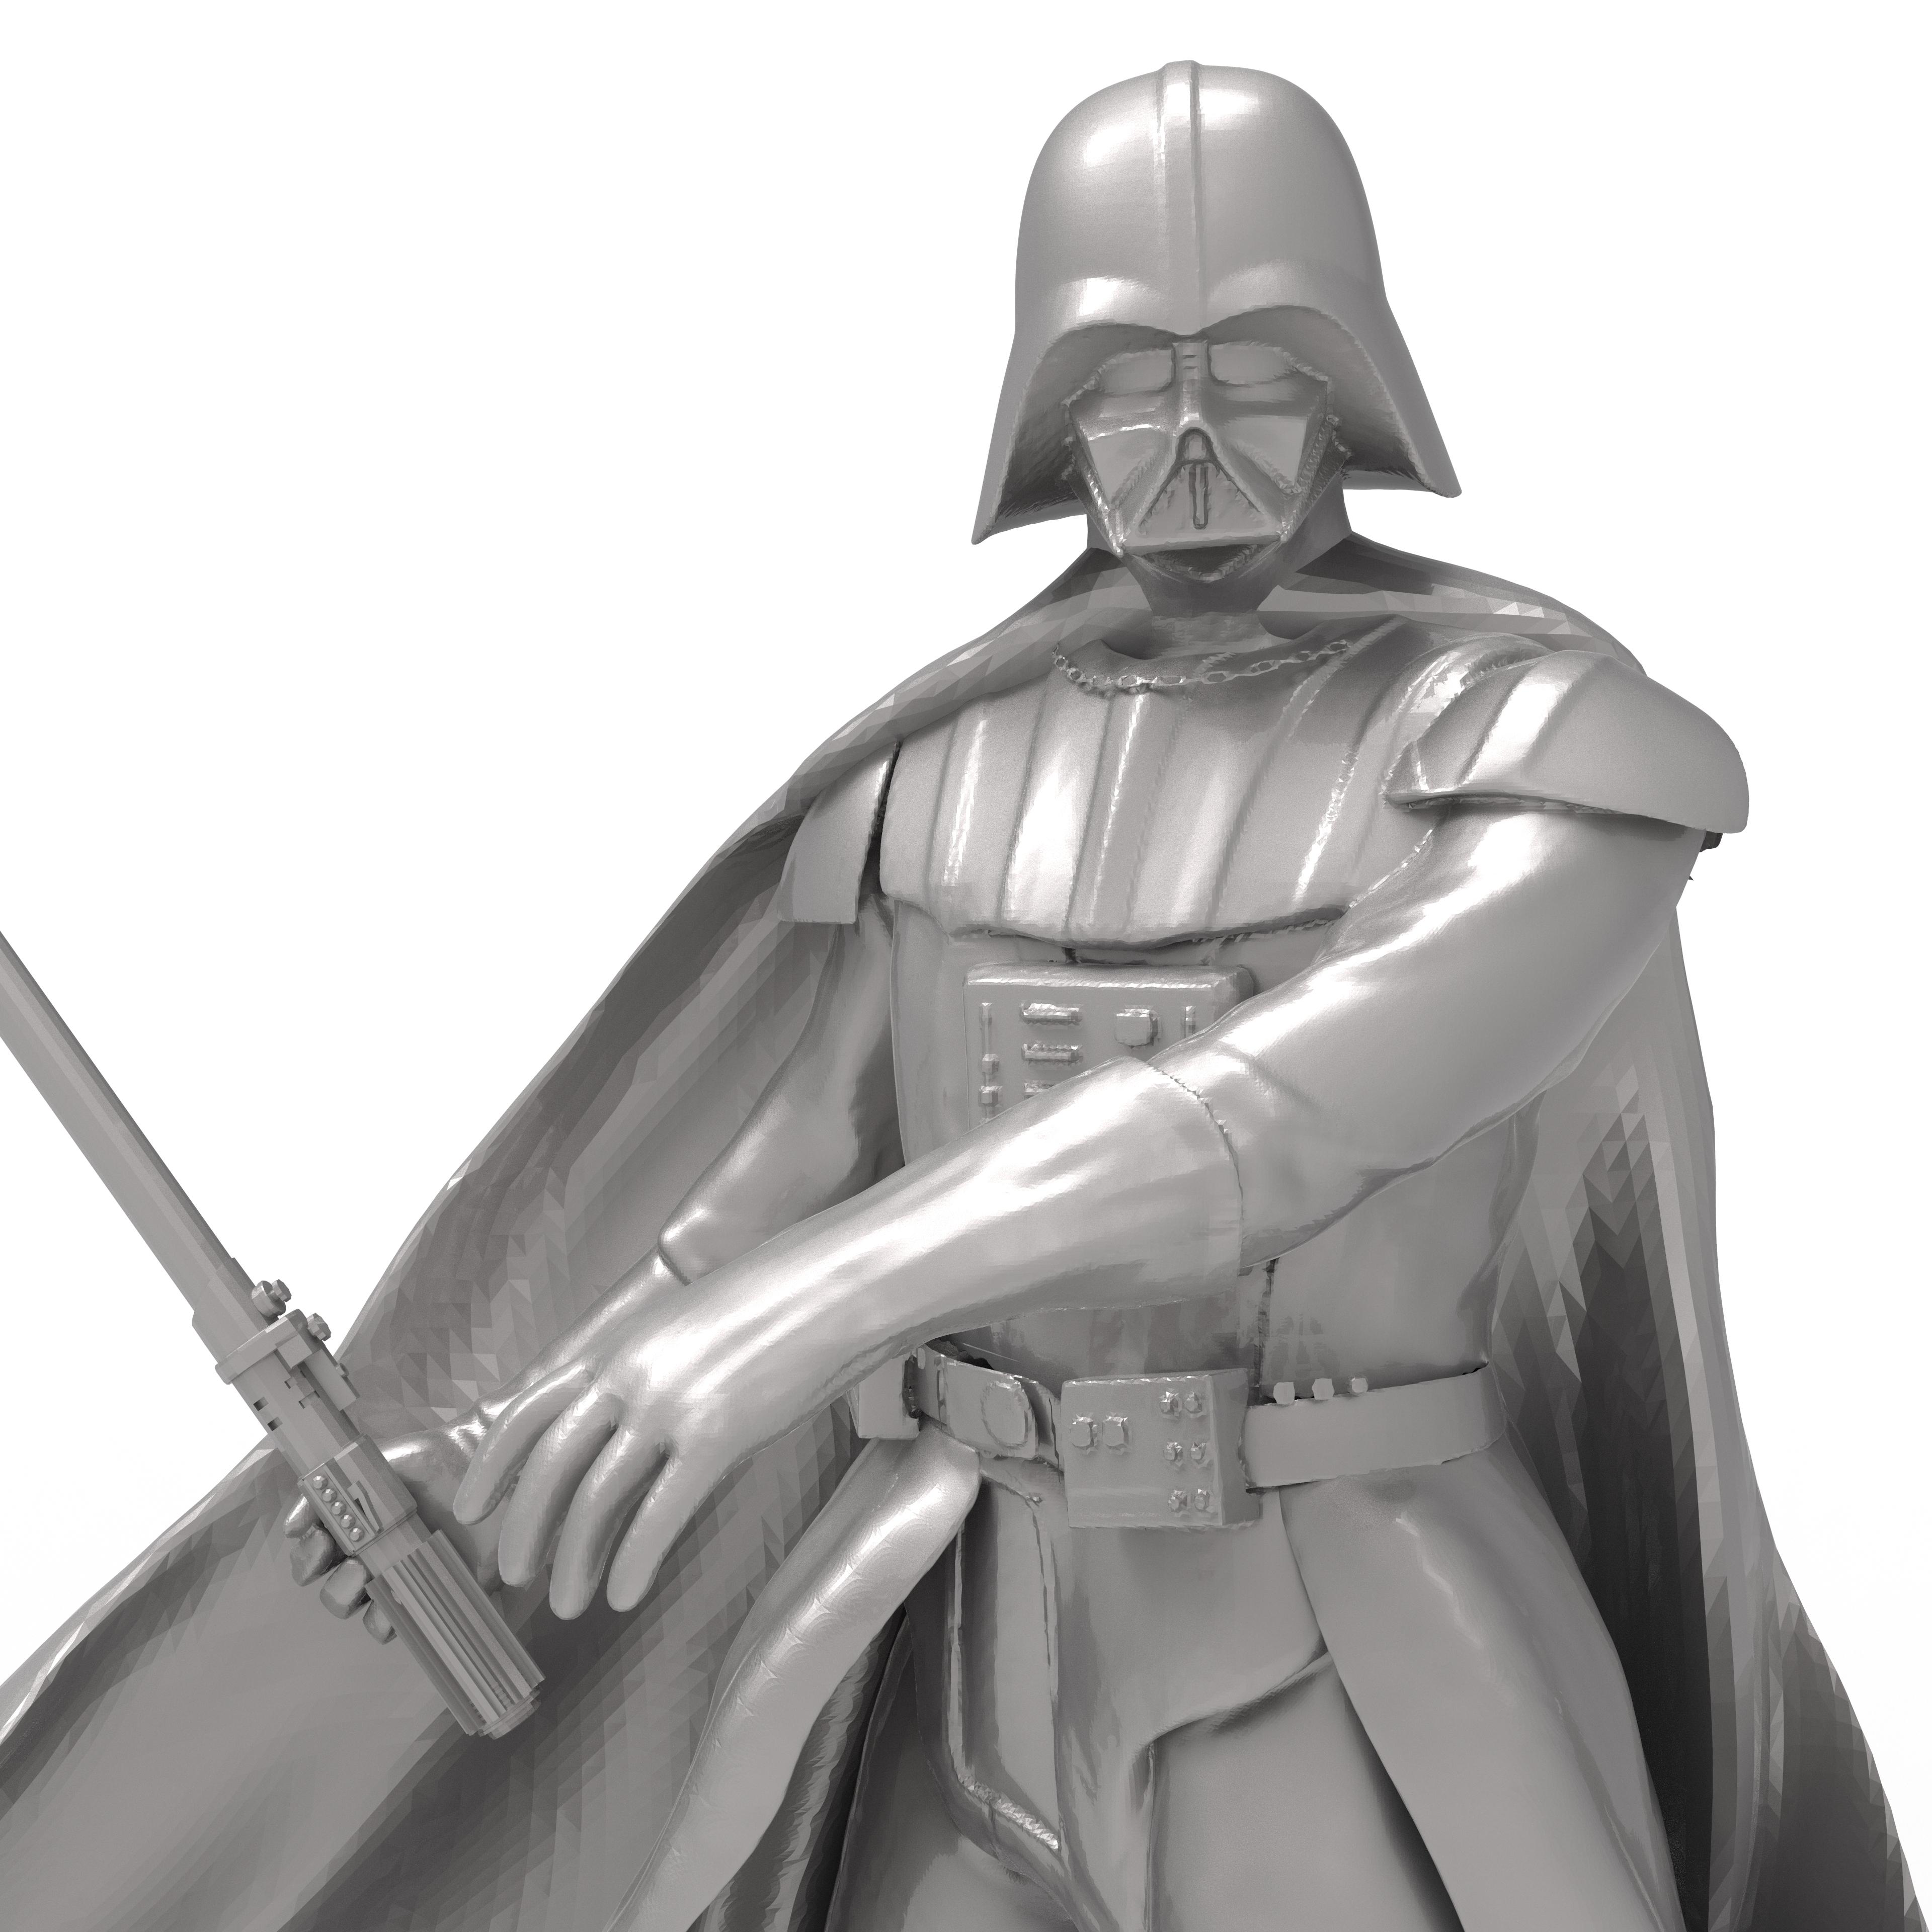 Darth Vader with lightsaber 3d model